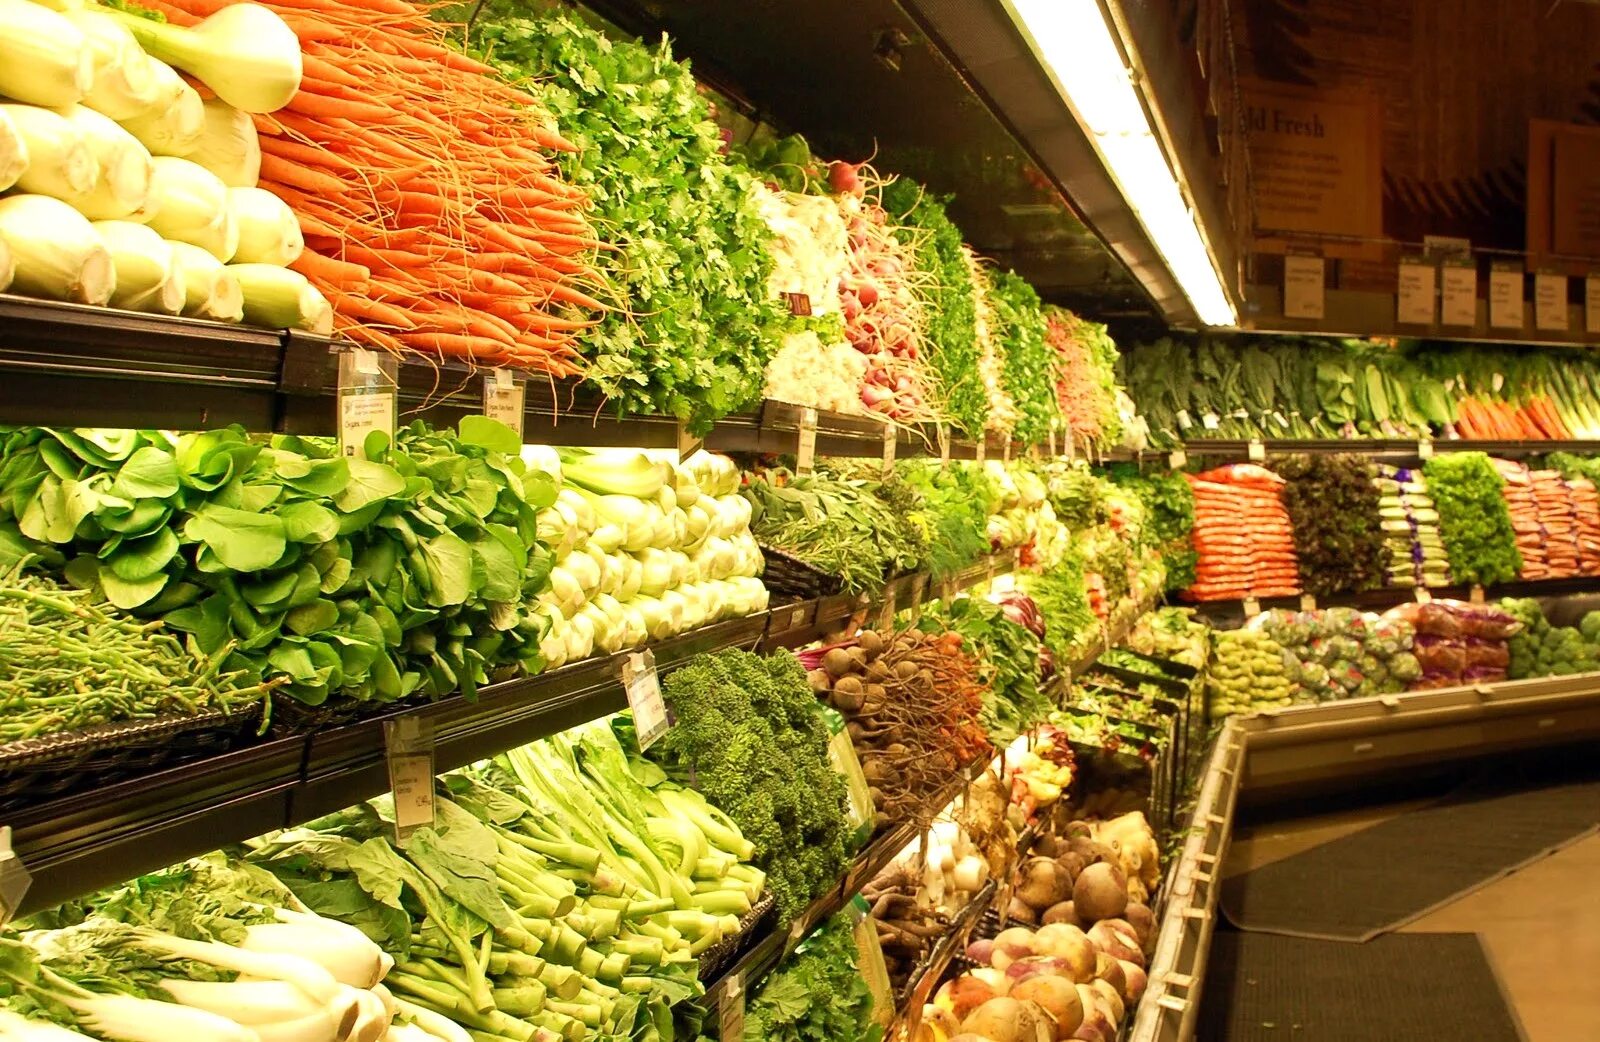 Vegetables shop. Выкладка овощей. Выкладка овощей и фруктов в магазине. Выкладка овощей в магазине. Овощи выкладка и фрукты в магазине.